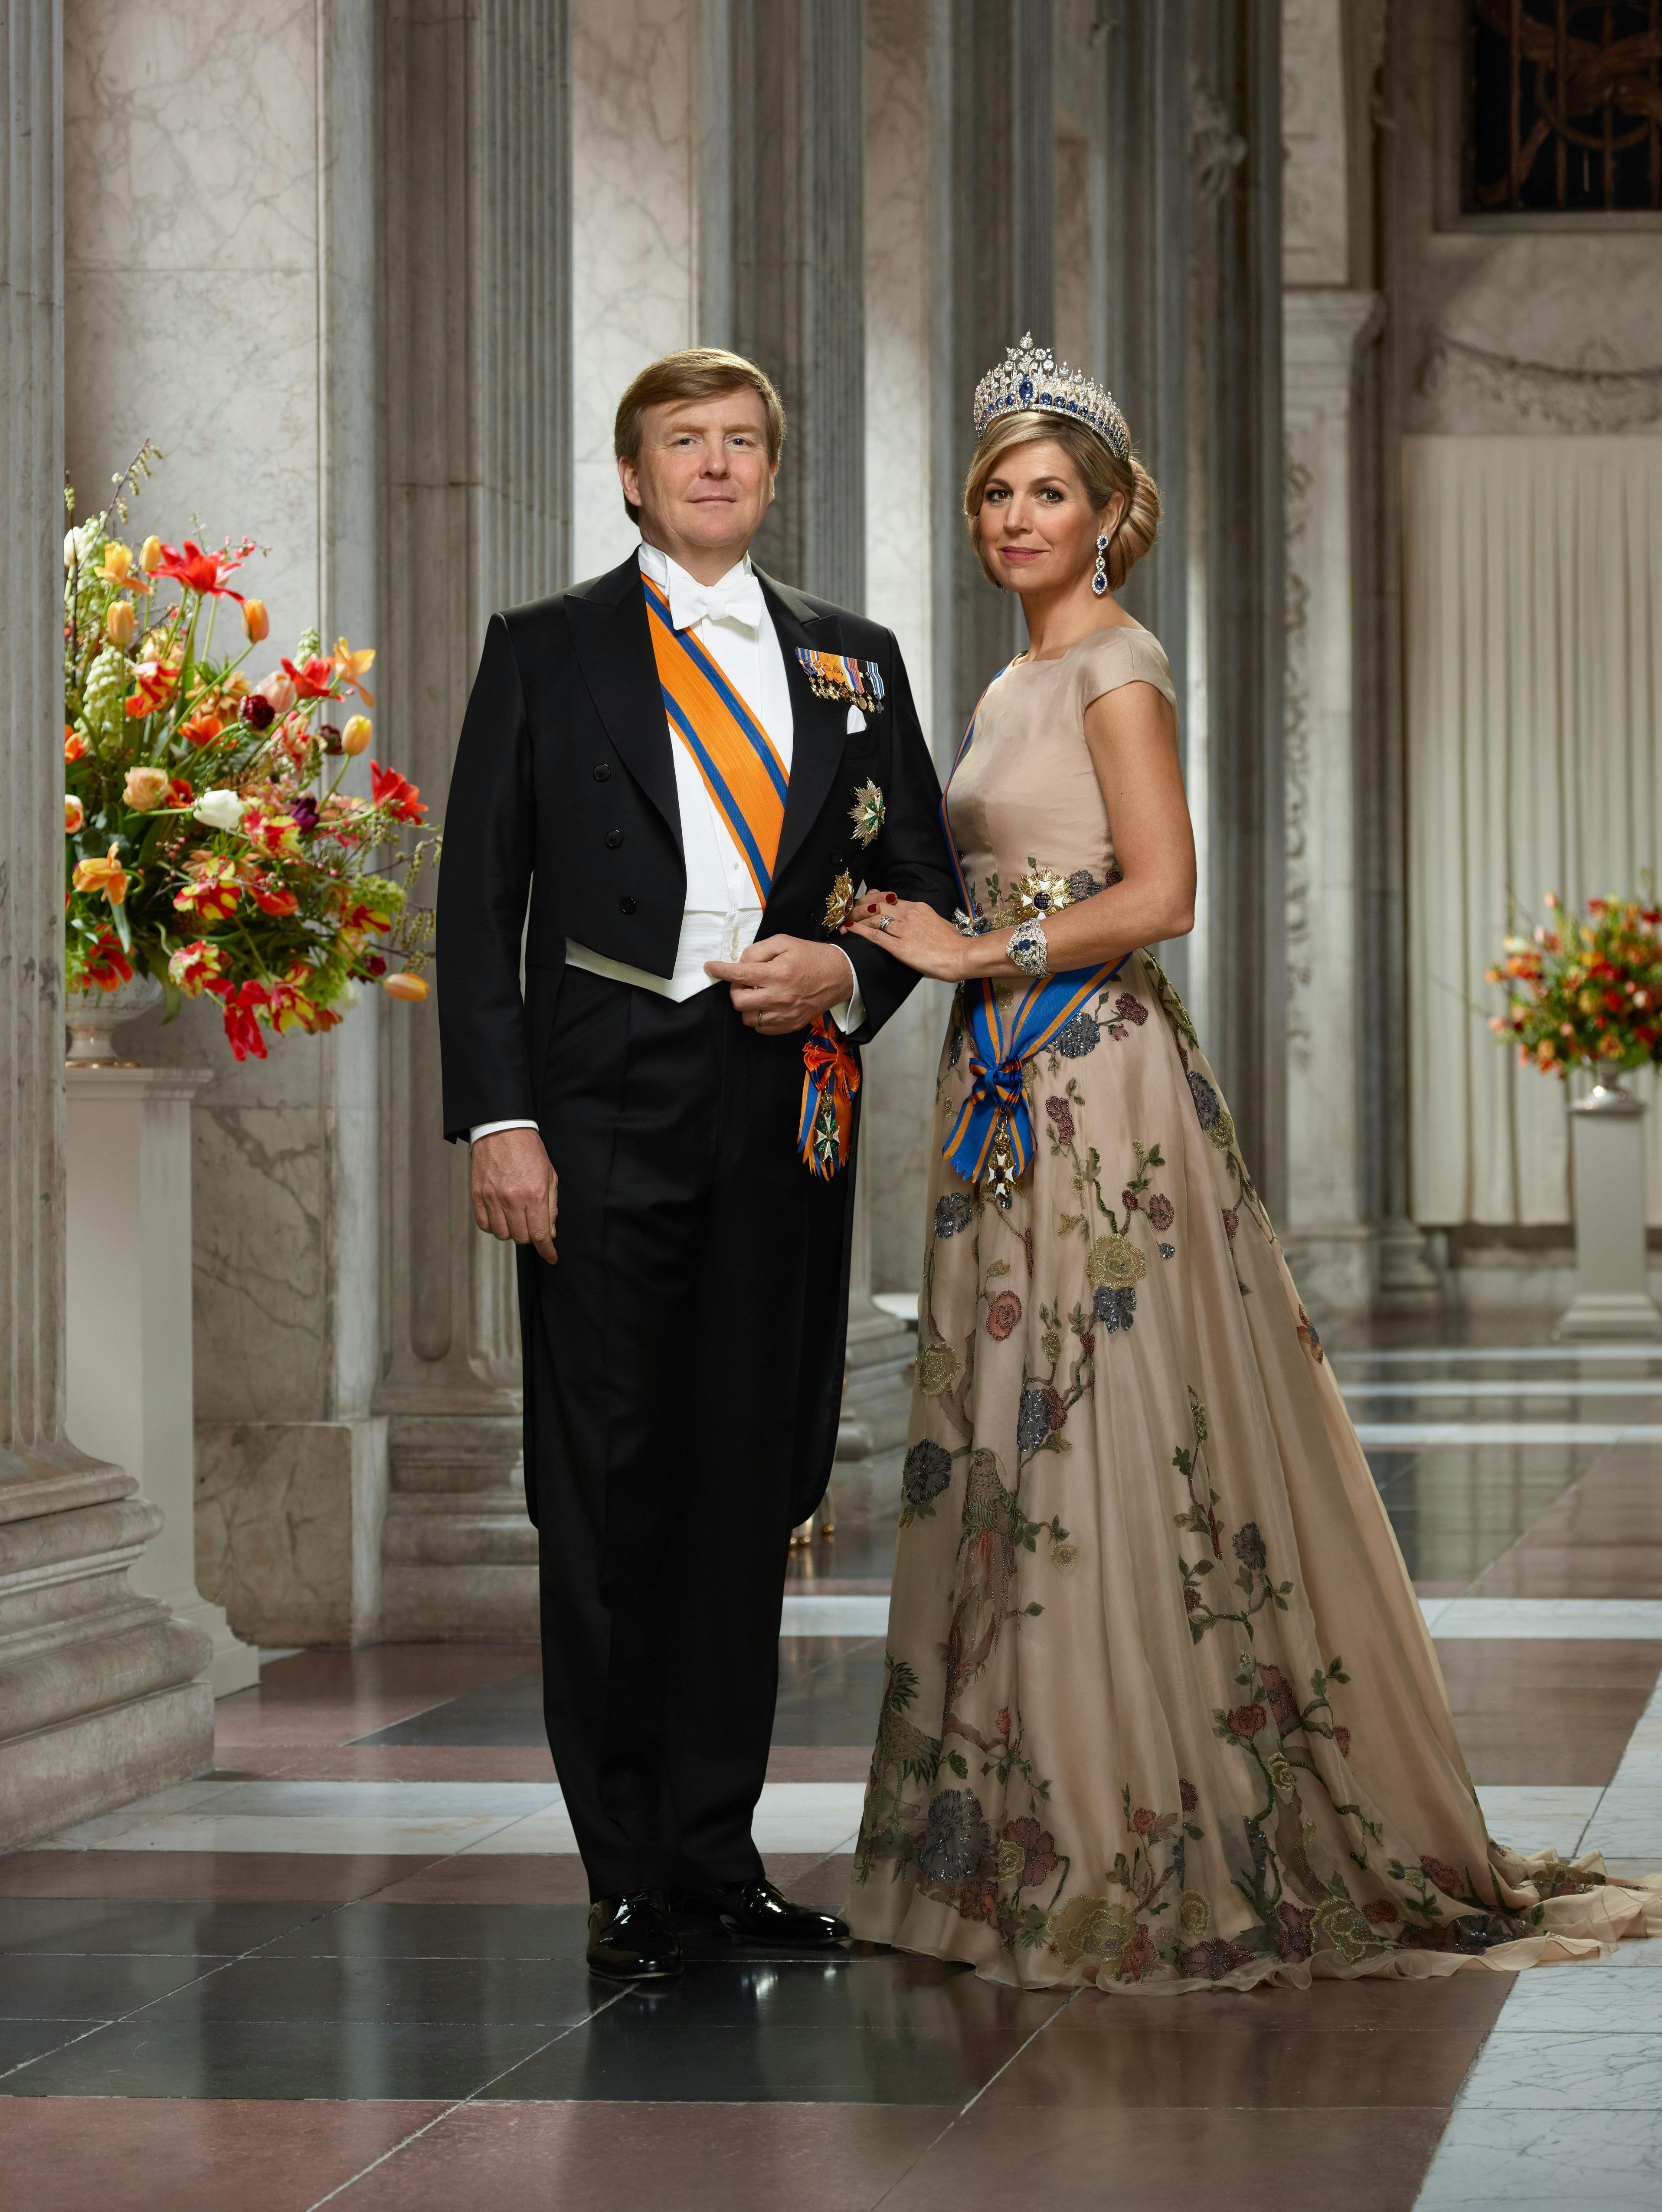 Officielt billede af kong Willem-Alexander og dronning Maxima i 2018. Erwin Olaf er fotografen bag billederne.&nbsp;
